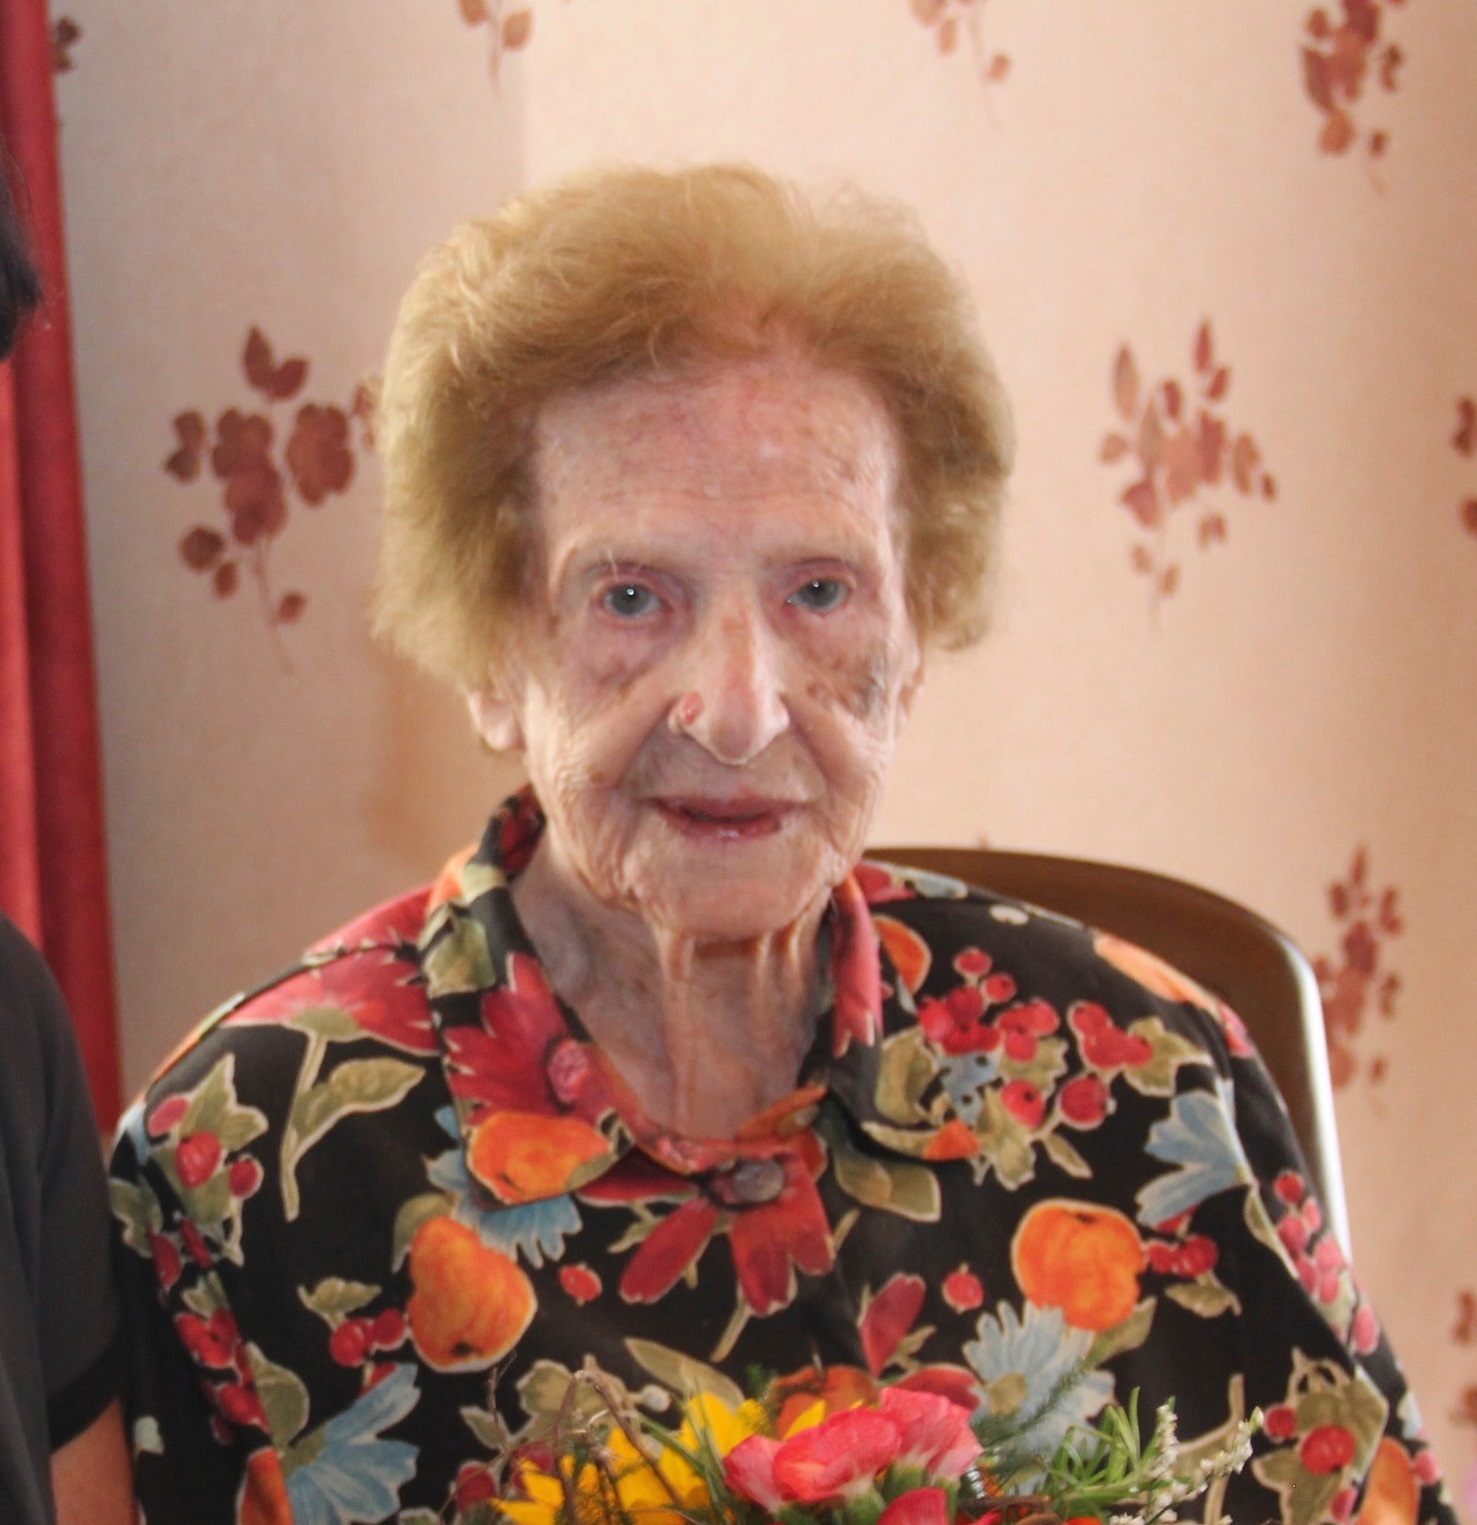 Furrer-Omlin on her 105th birthday. (Source: Luzerner Zeitung)